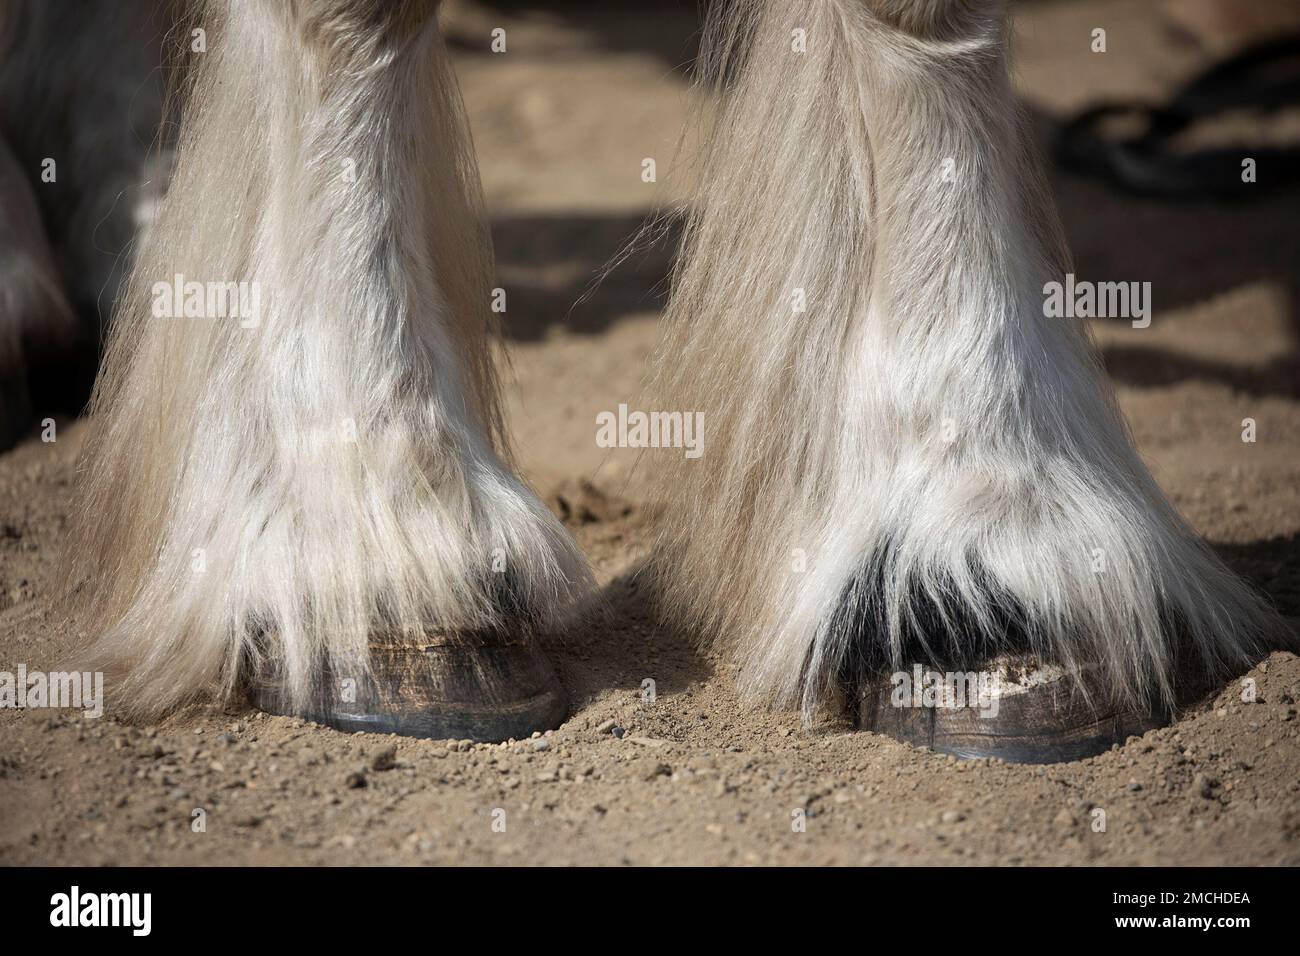 Sabots et jambes avant avec de longues plumes de cheveux d'un cheval à traction Gypsy Vanner, gros plan. Alberta, Canada Banque D'Images